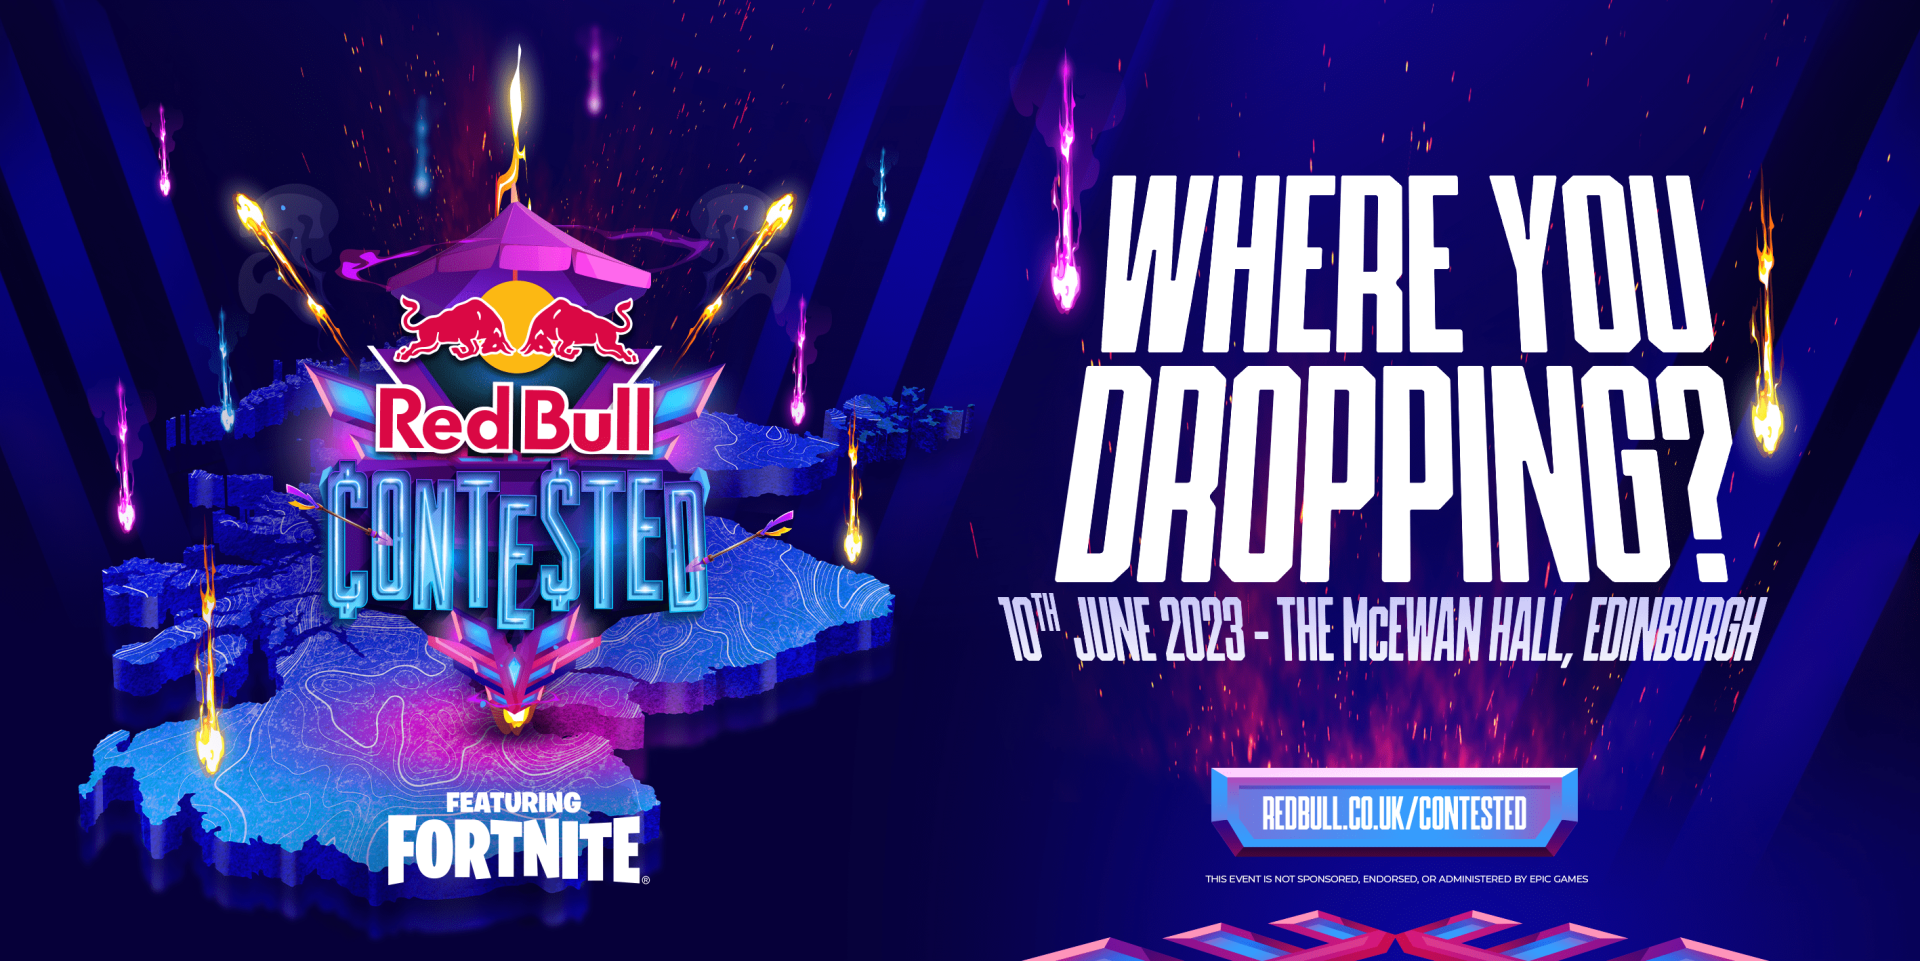 Hula hop Drik vand paritet Red Bull announces Fortnite LAN tournament in the UK